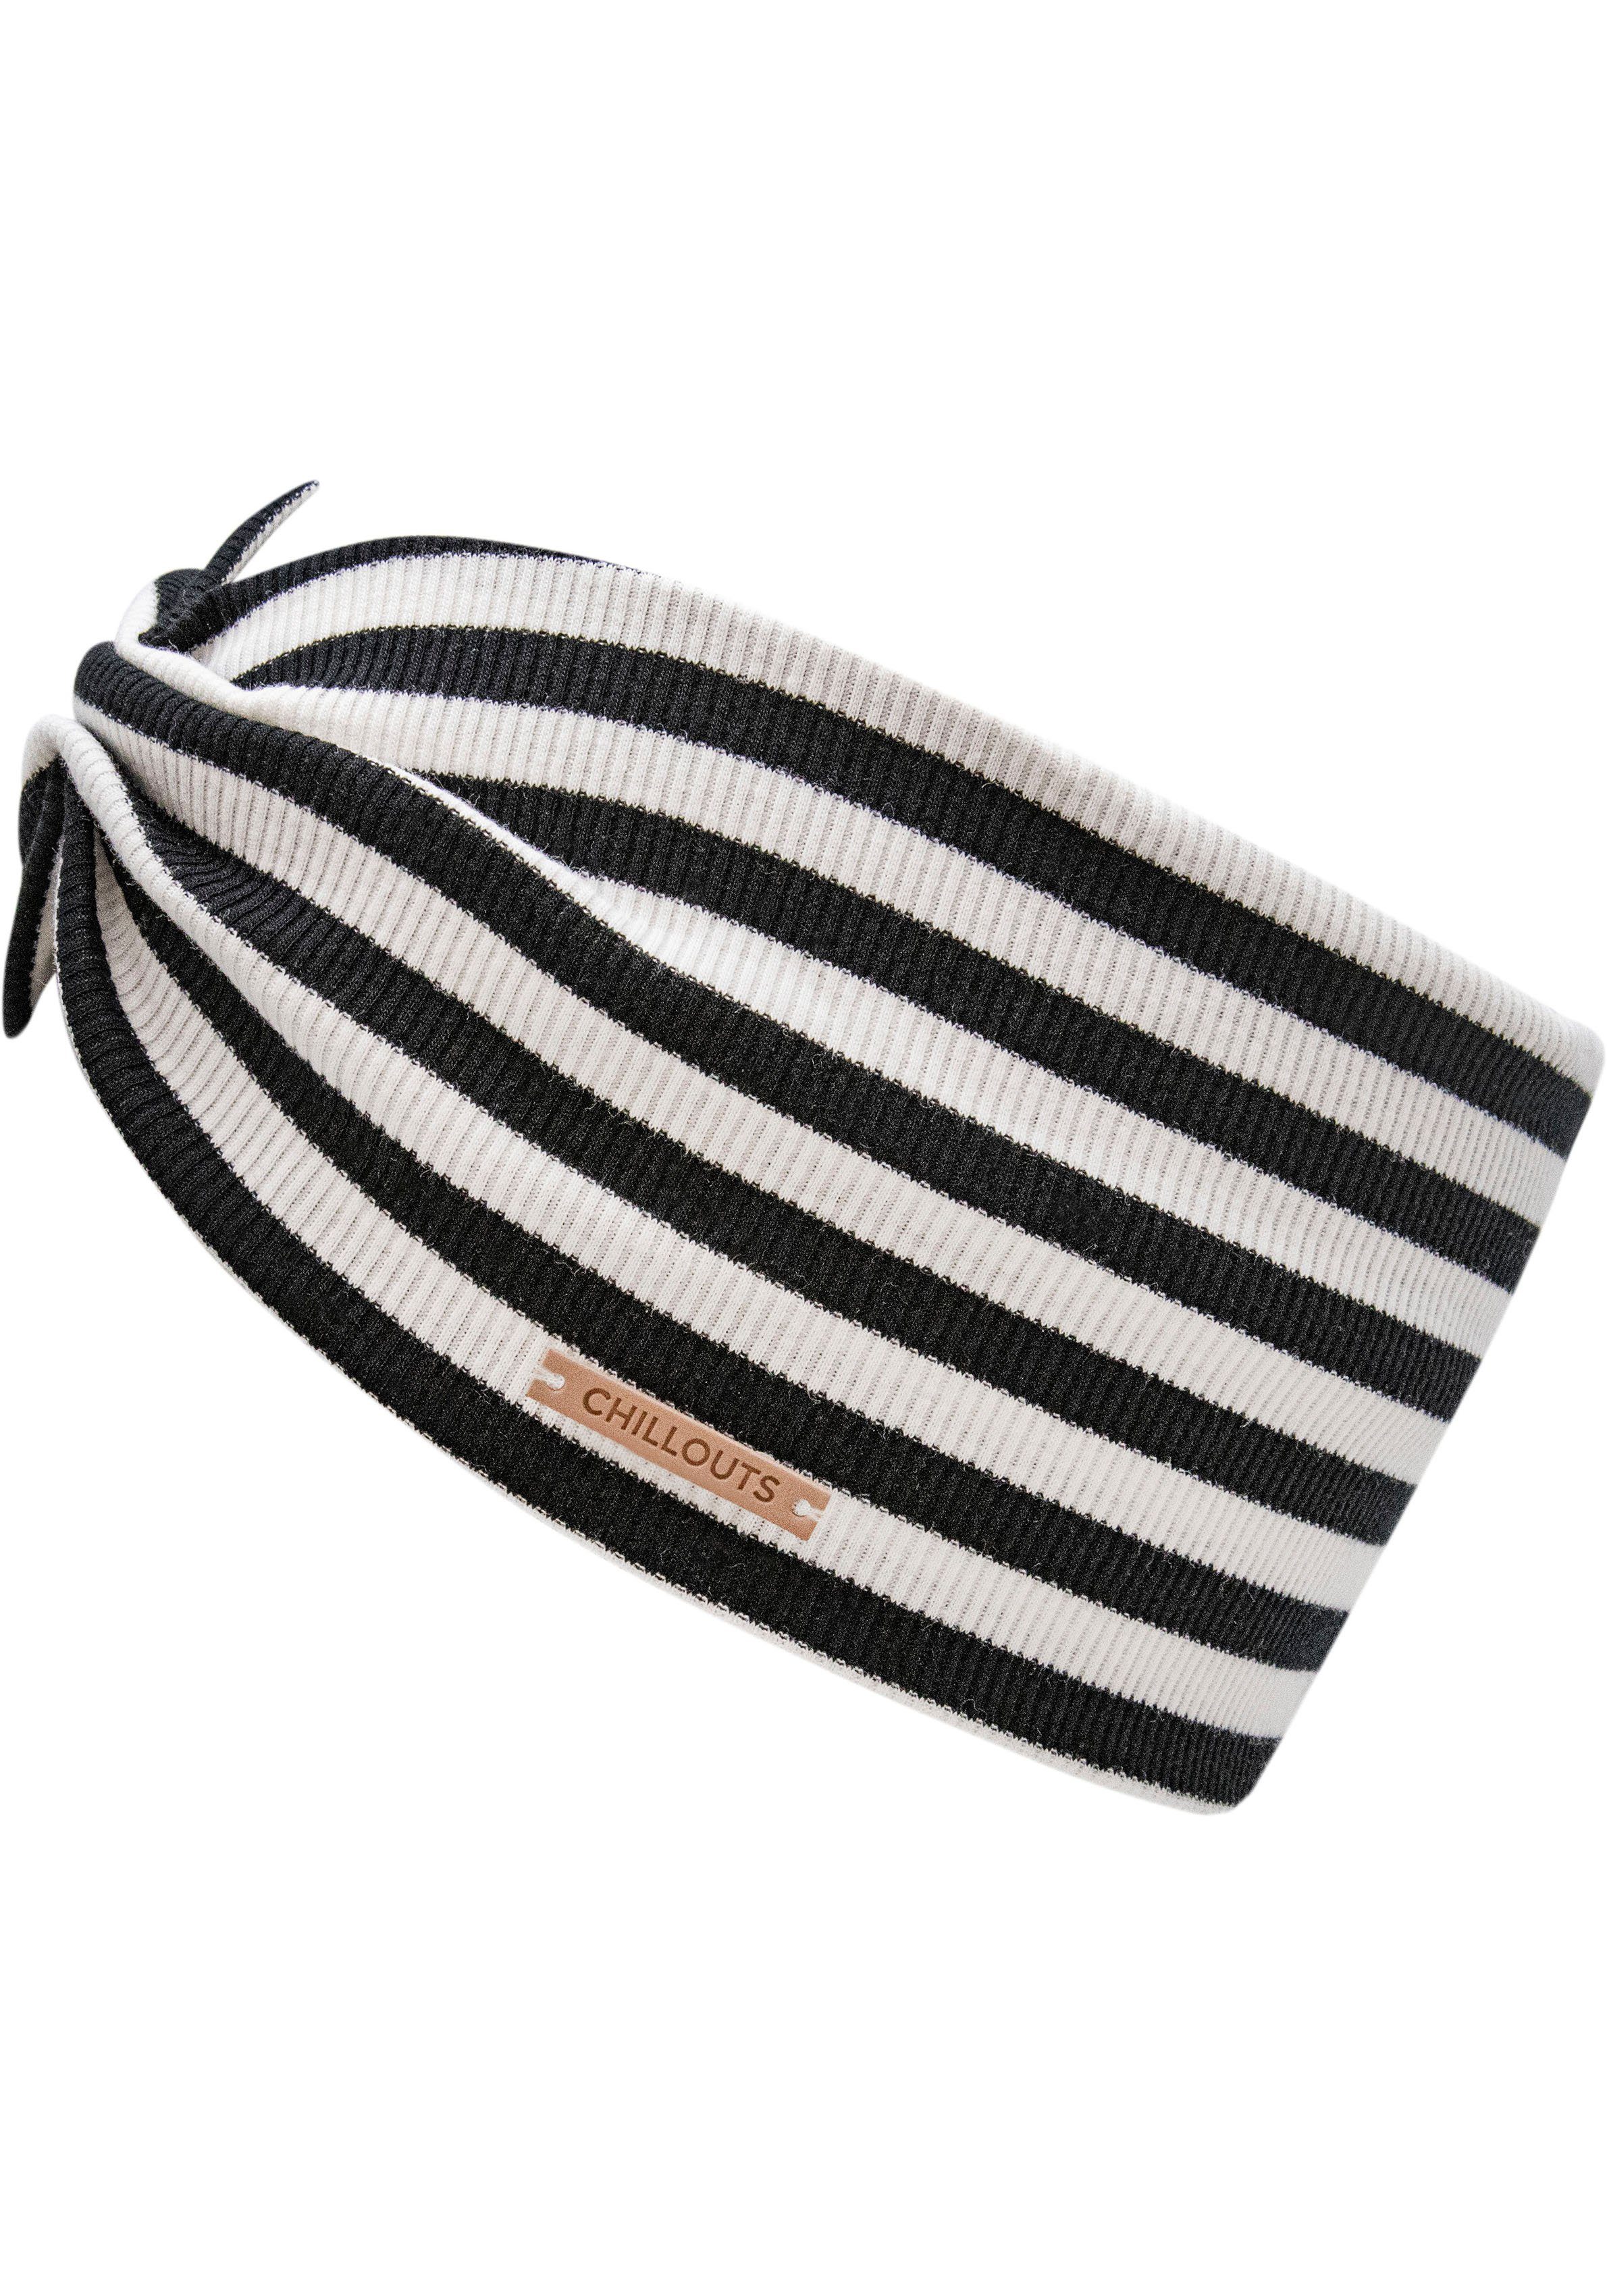 chillouts Stirnband Eilat Headband schwarz weiß